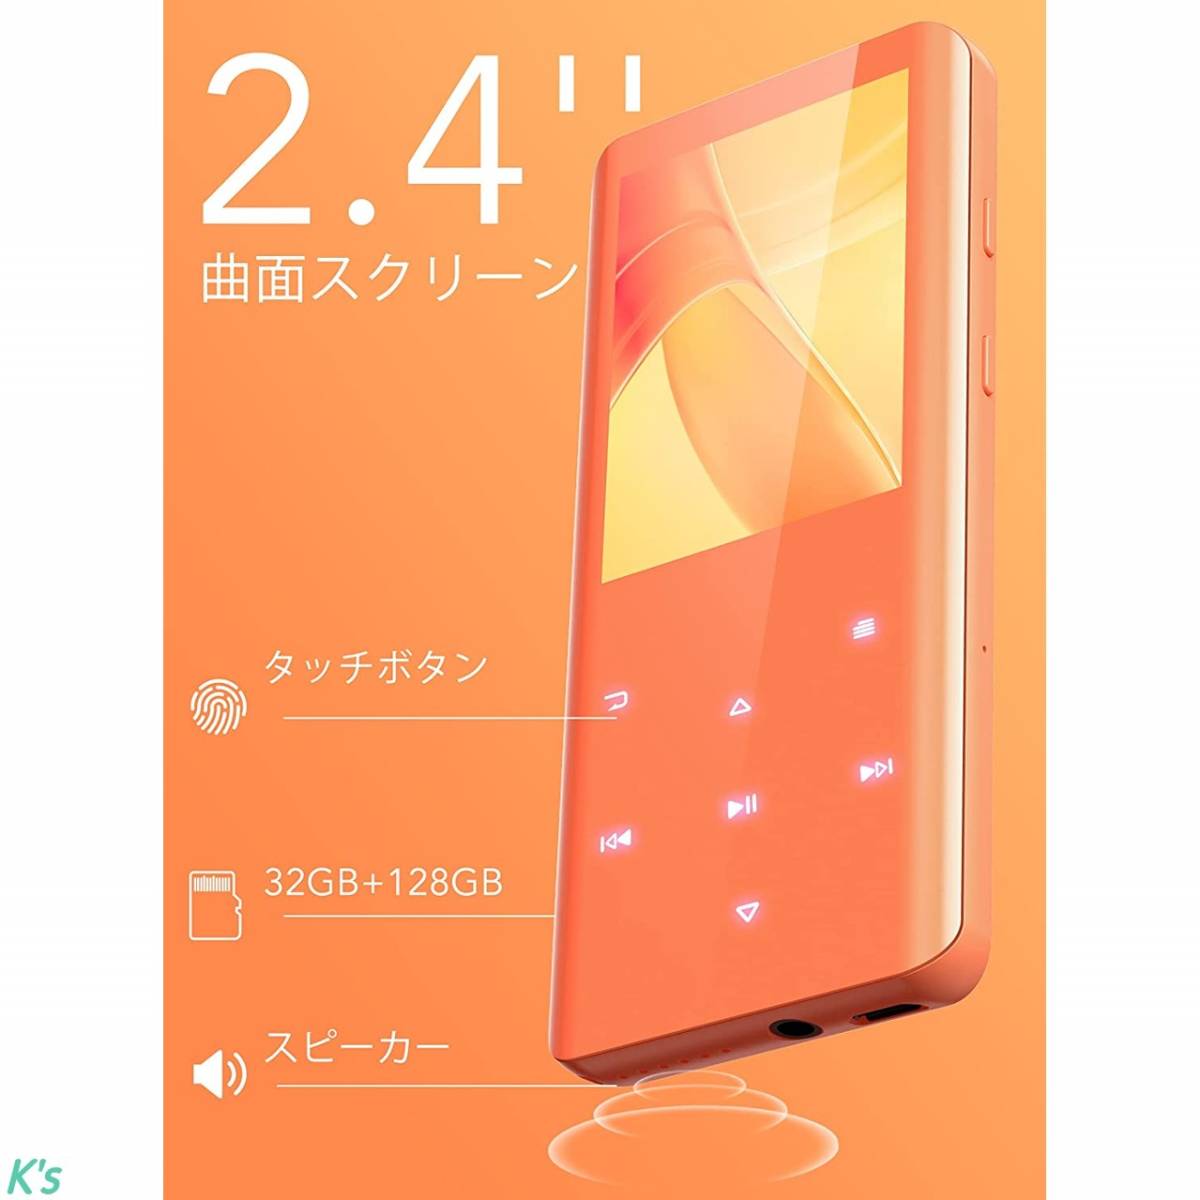 オレンジ 最大48時間再生 32GB内蔵 最大128GB Bluetooth5.0 2.4インチ大画面 MP3プレーヤー スピーカー内臓 HIFI高音質 日本語説明書付き_画像1